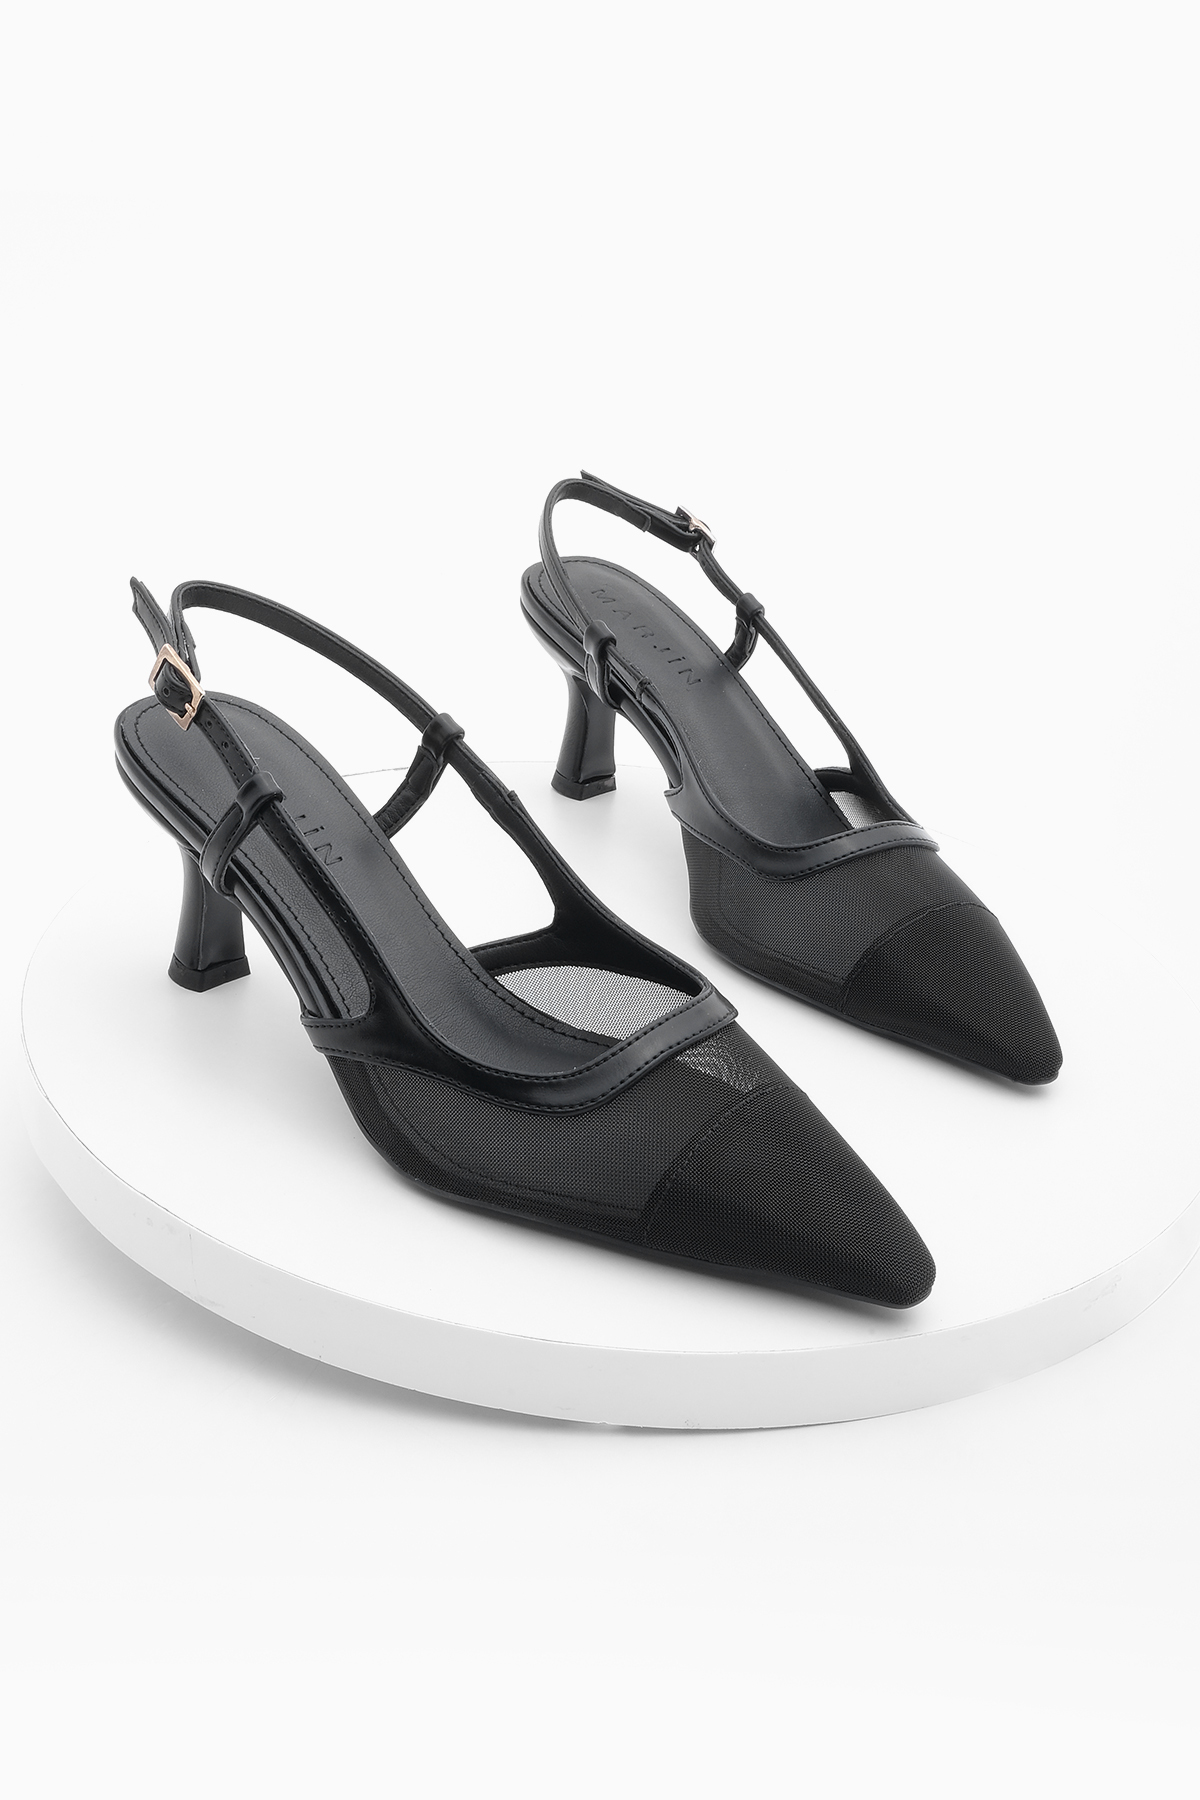 Levně Marjin Women's Pointed Toe Open Back Mesh Classic Heel Shoes Bevon Black